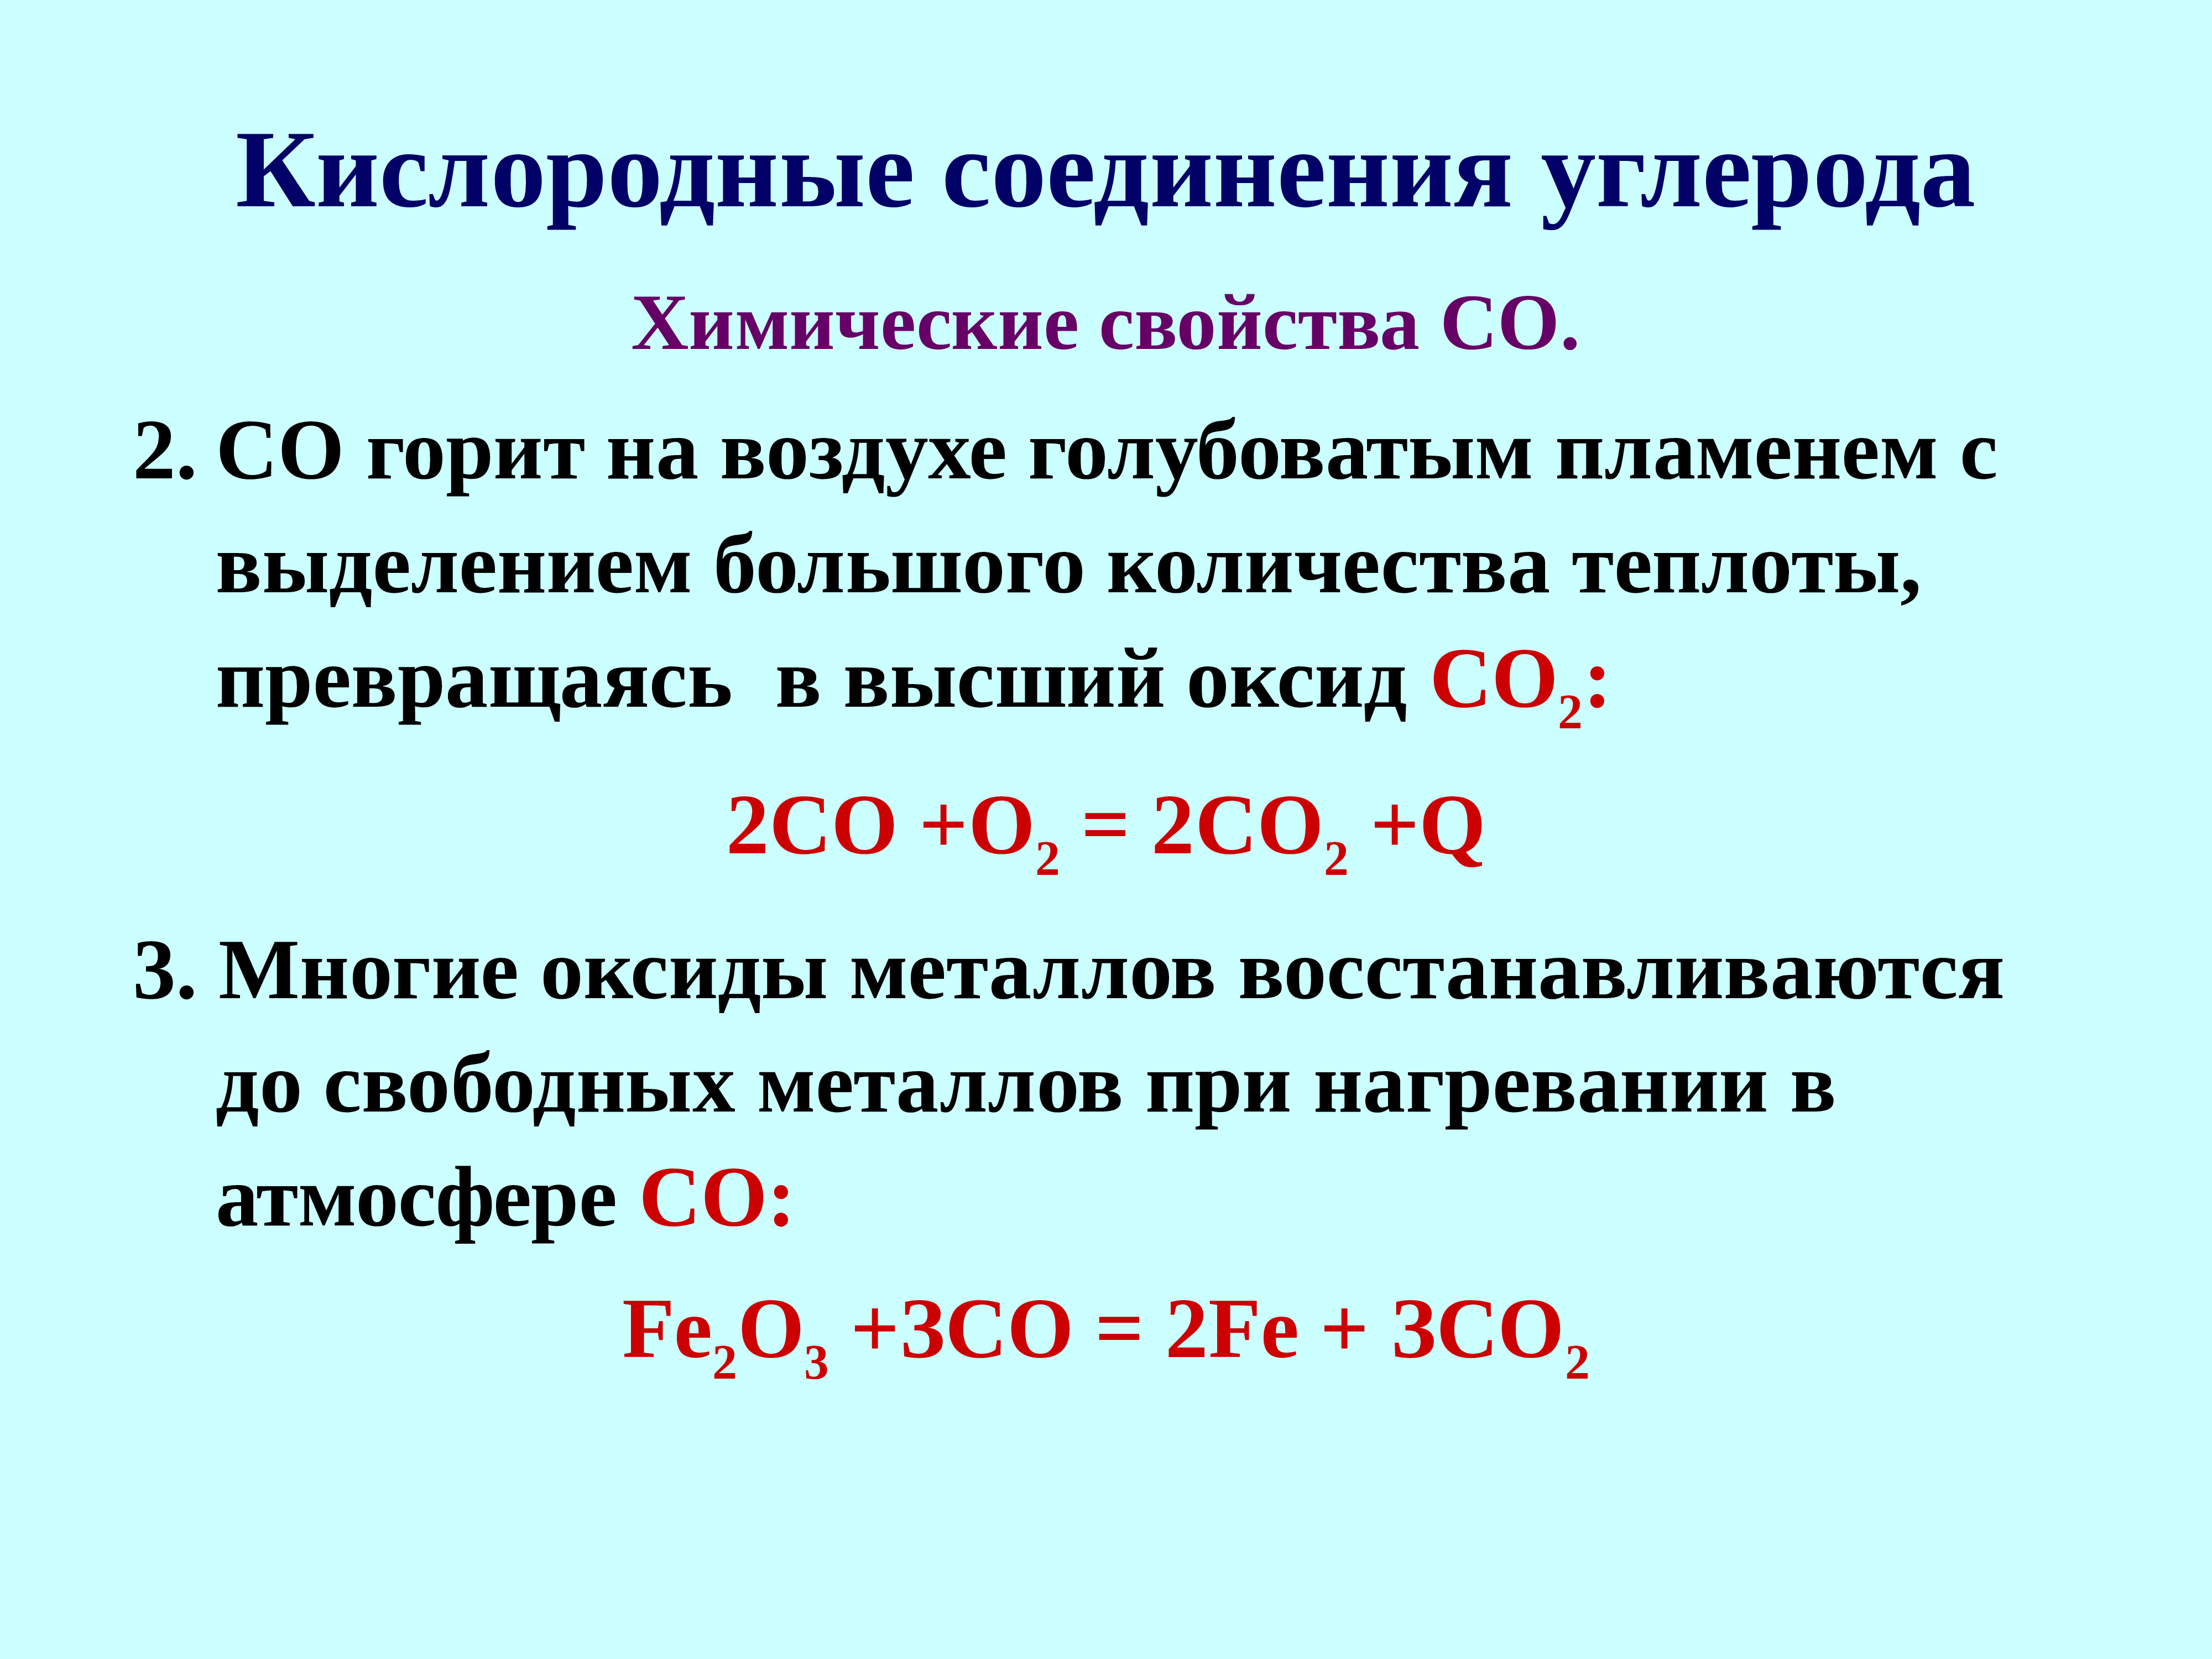 Превращение соединение углерода. Кислородные соединения. Соединения углерода. Кислородные соединения углерода таблица. Кислородные соединения углерода конспект.